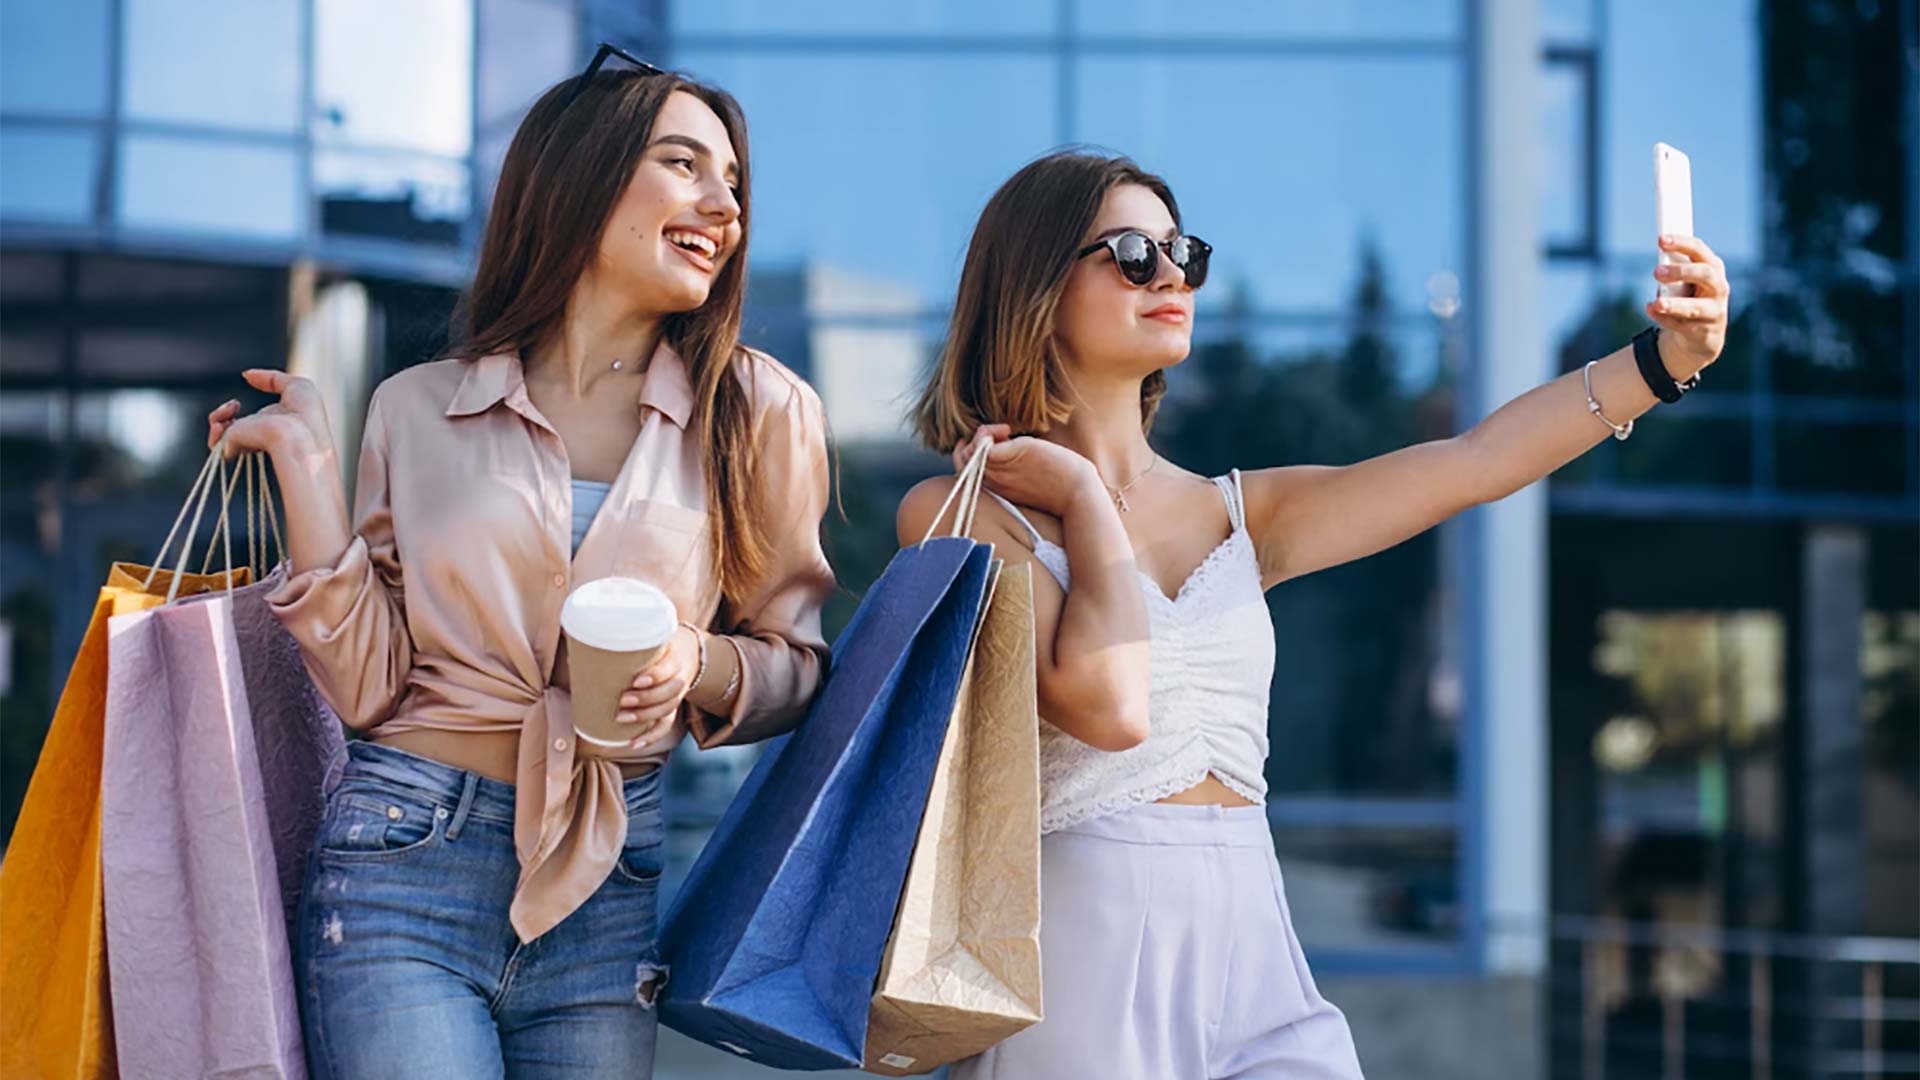 Retailtainment, experiencias únicas en centros comerciales